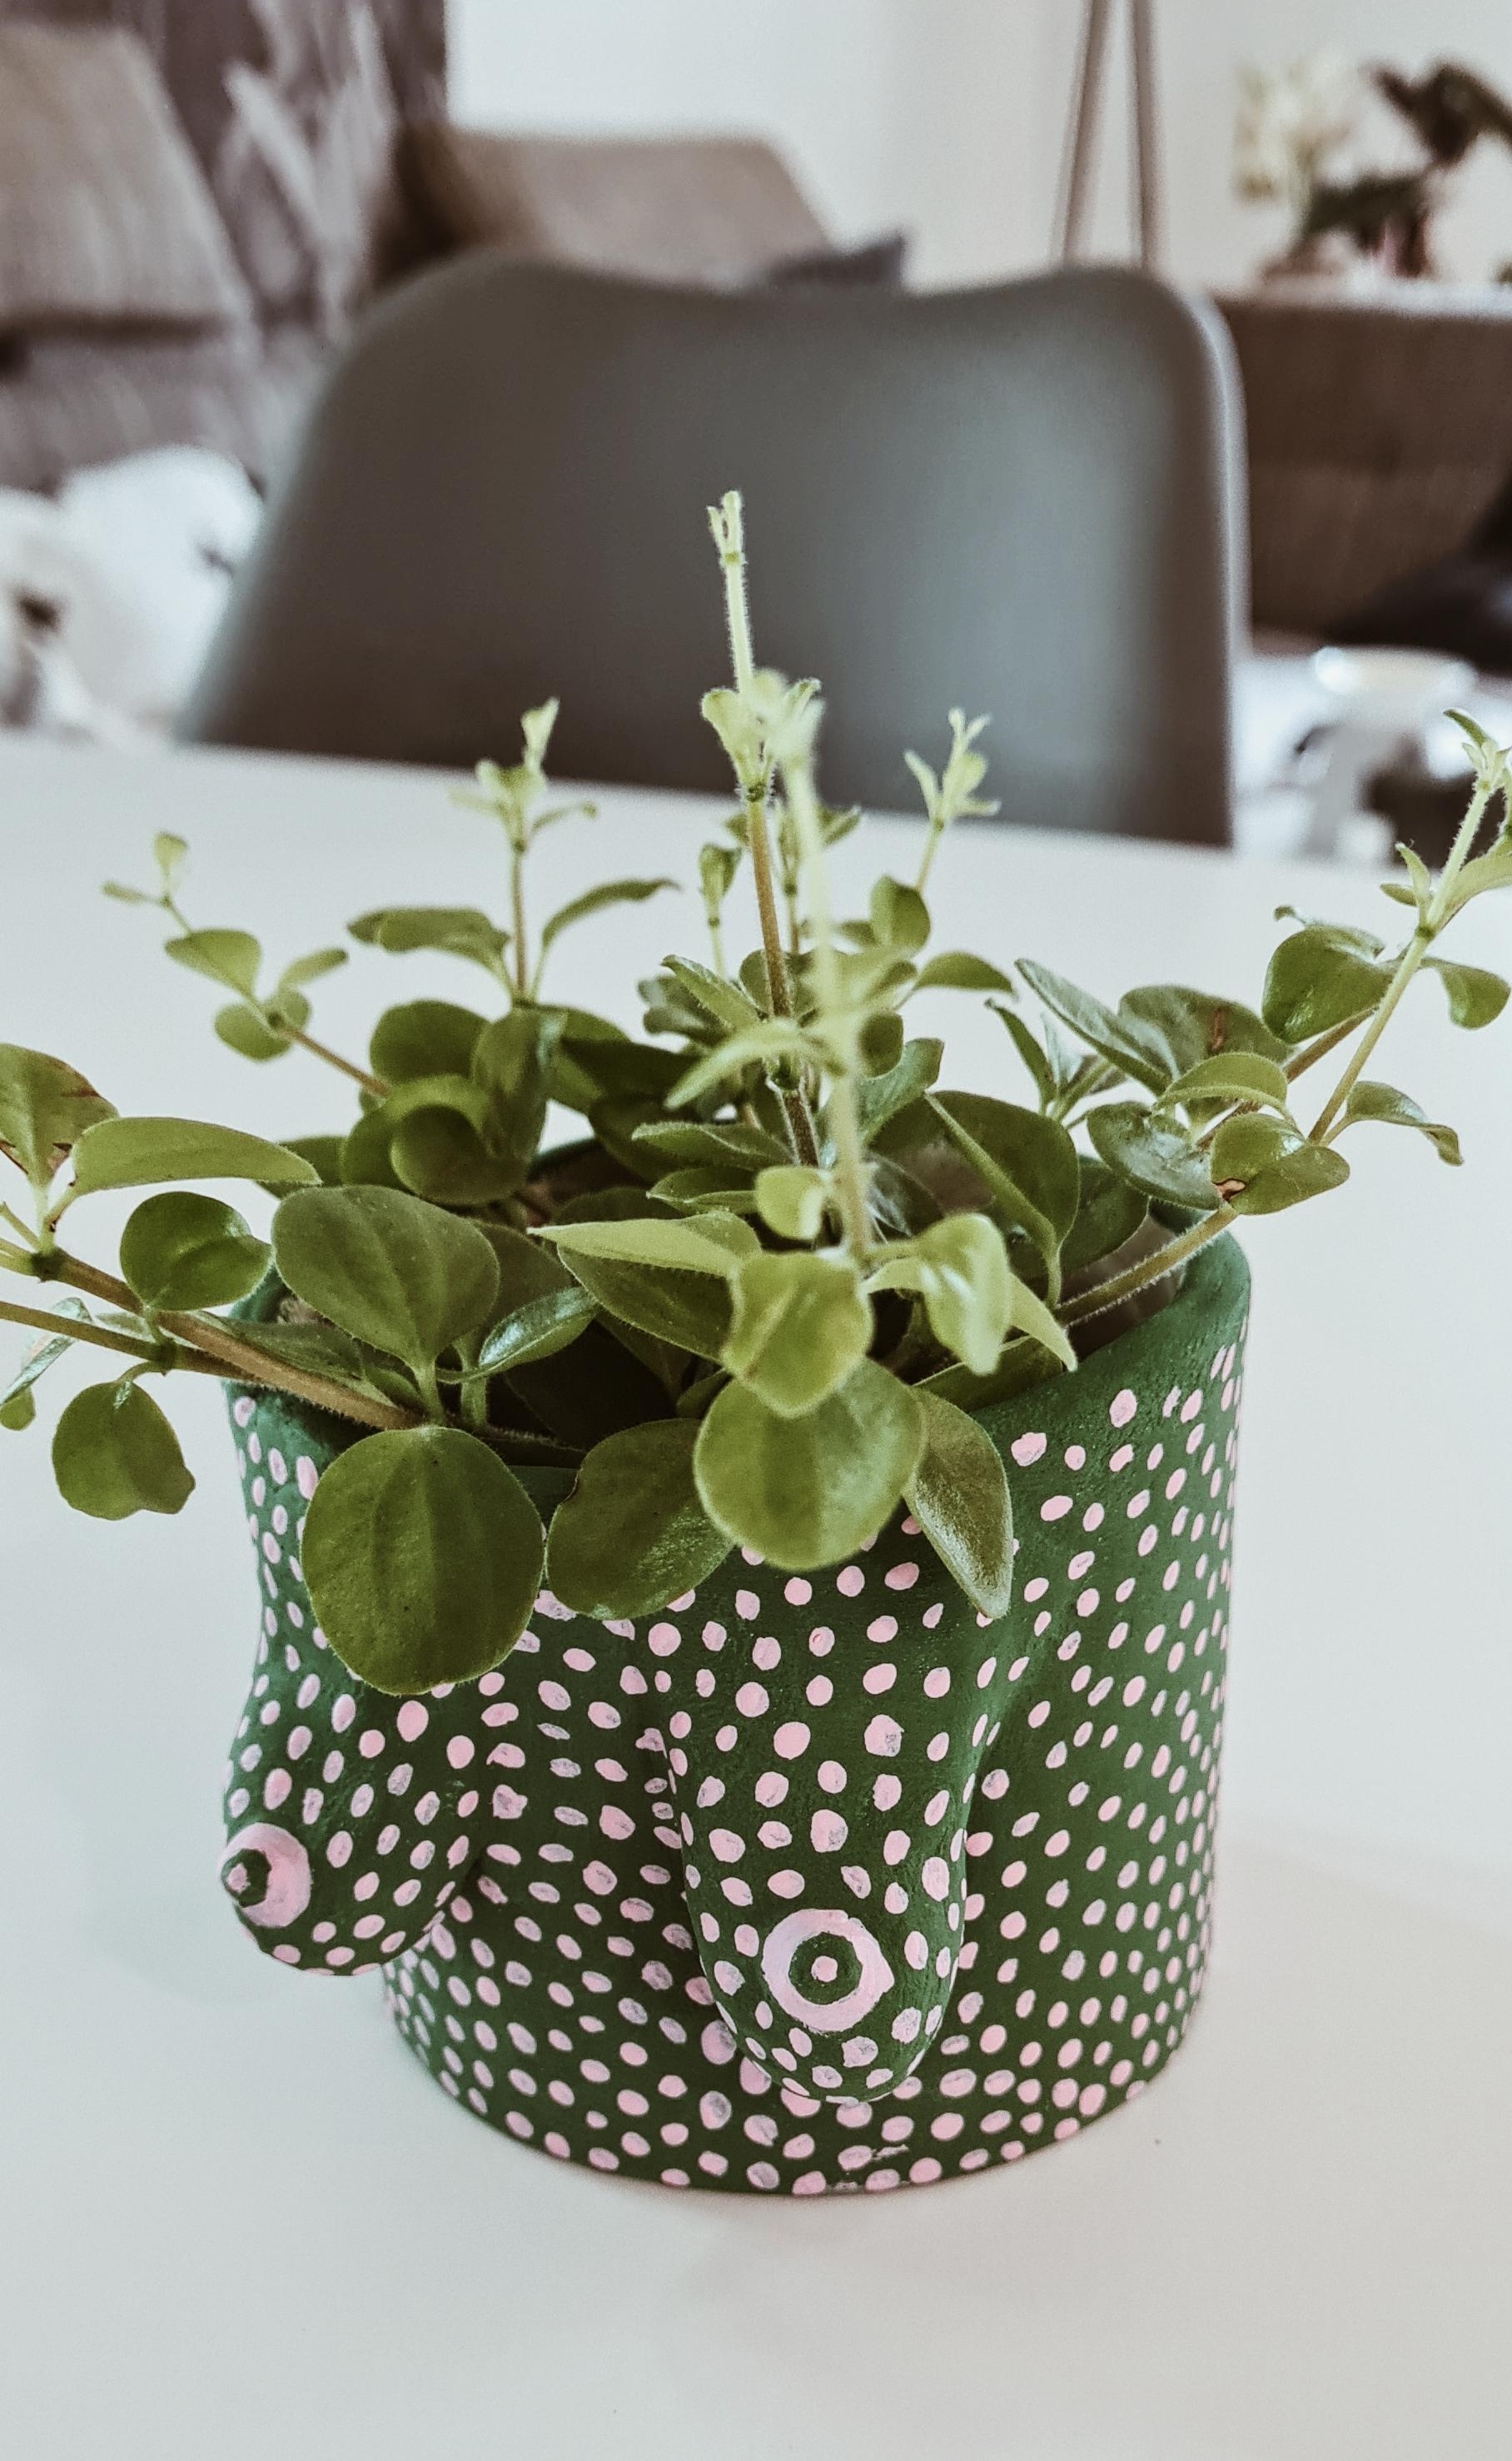 Mein #diy ein Boobstopf für meine Pflanzen...Love it

#diy #pflanzen #interiordesign #interior 